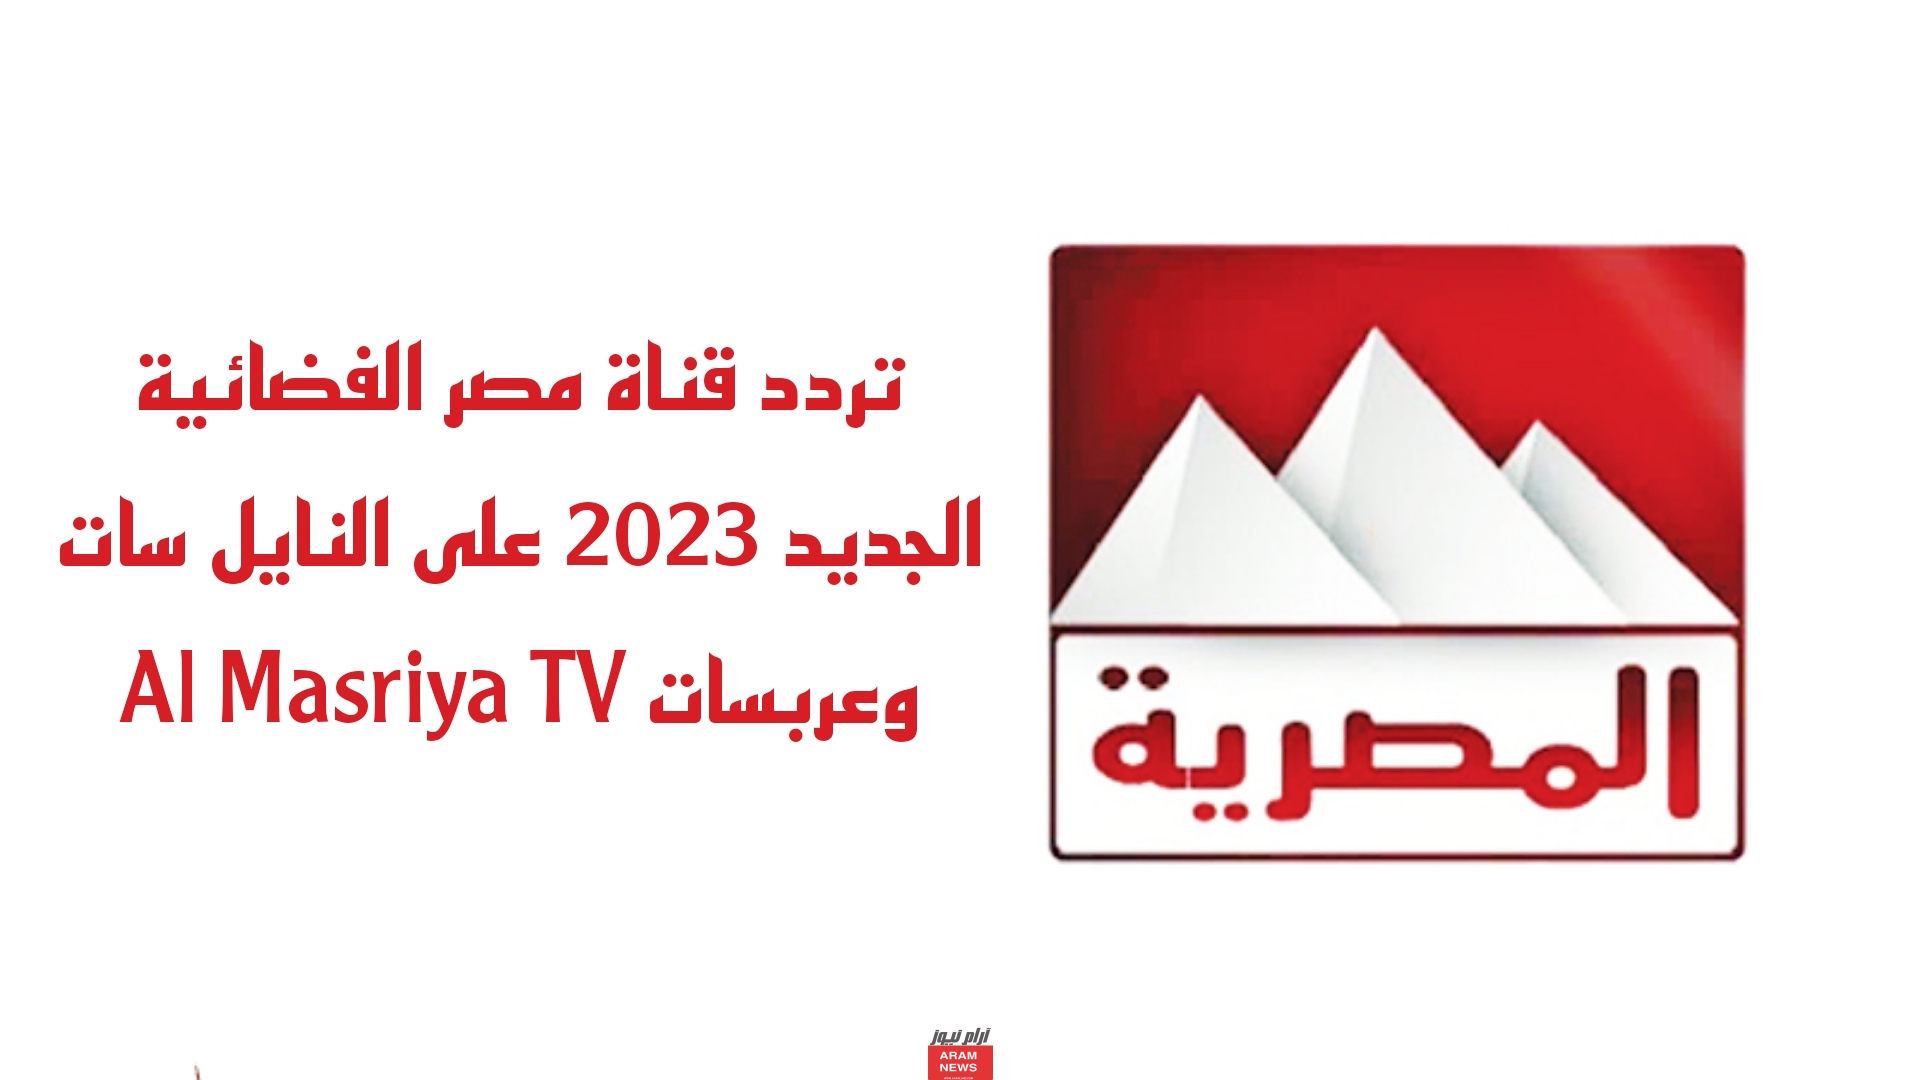 تردد قناة مصر الفضائية الجديد على النايل سات وعربسات Al Masriya TV